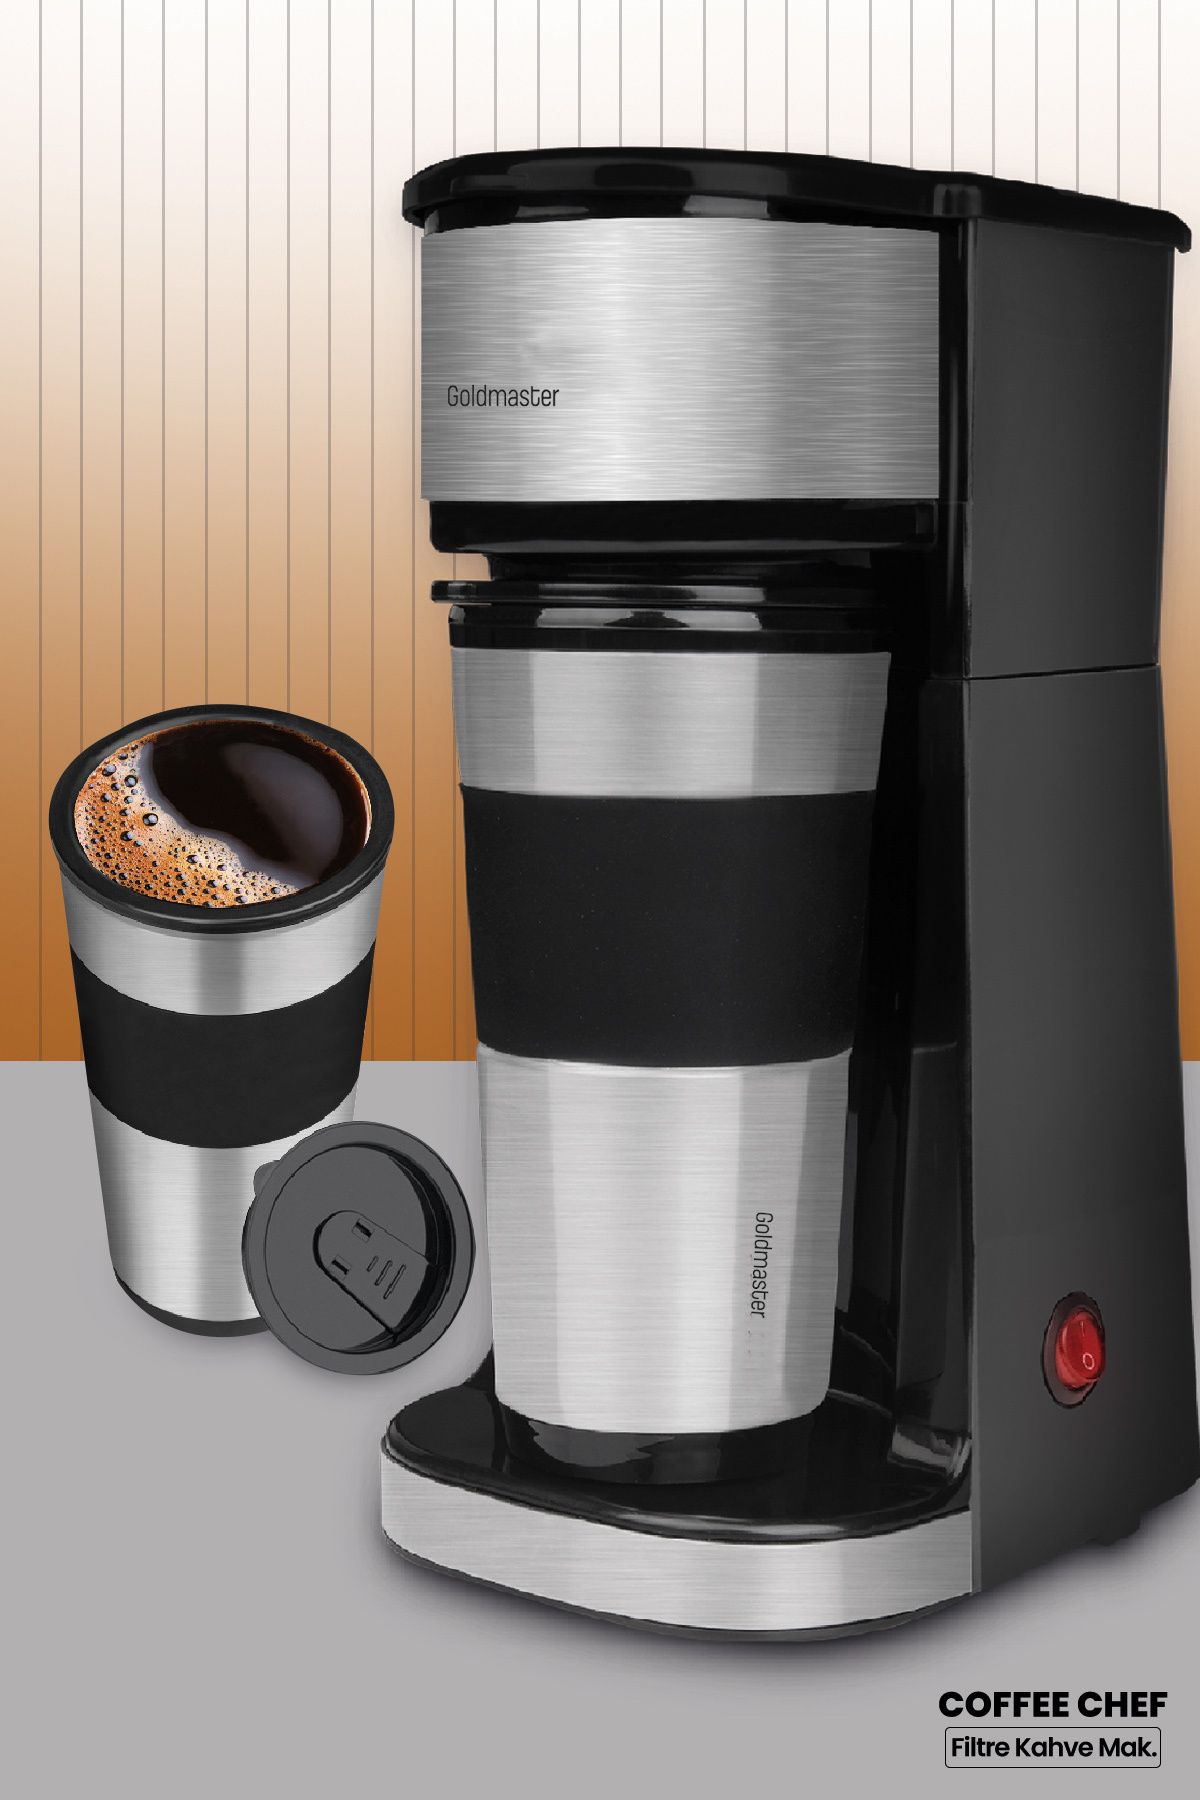 GoldMaster Coffee Chef Paslanmaz Çelik Termos Seyahat Bardaklı Kişisel Filtre Kahve Makinesi